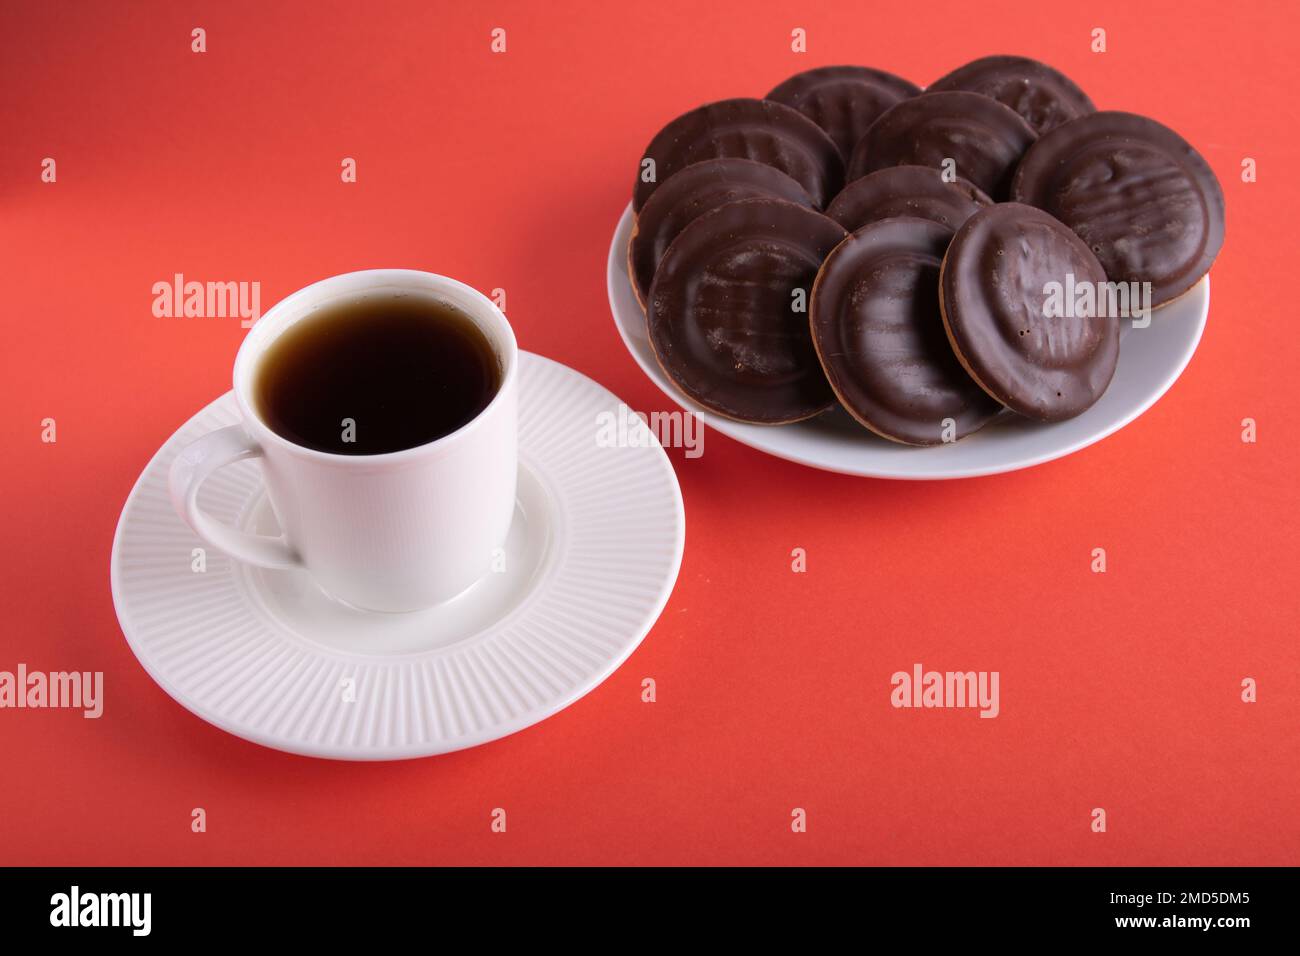 tazza fotografica di caffè e biscotti ricoperti di cioccolato in un piatto su sfondo colorato Foto Stock